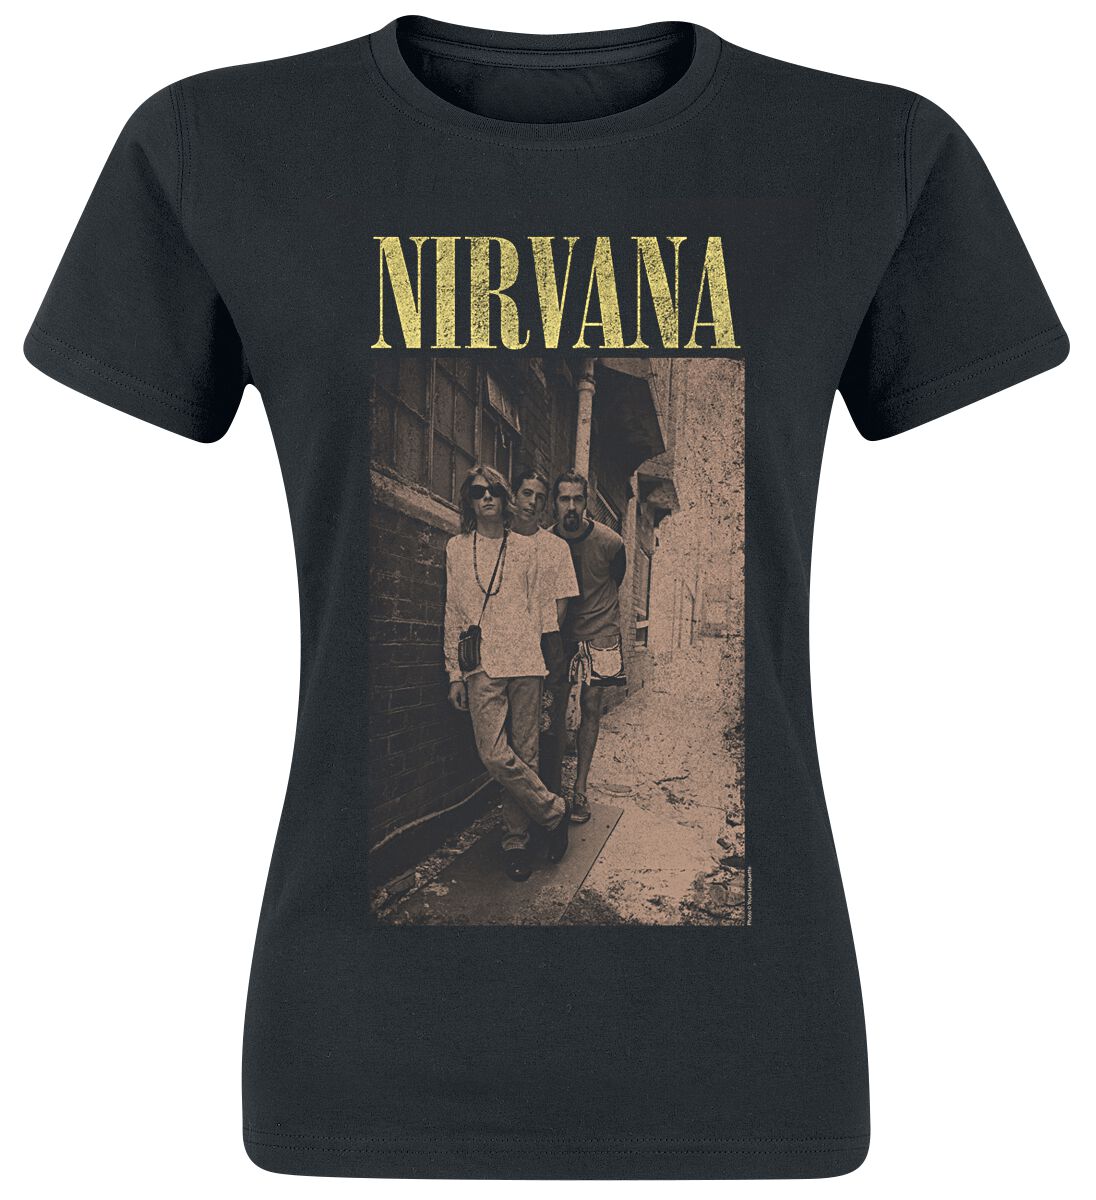 T-Shirt Manches courtes de Nirvana - Alleyway - S à XXL - pour Femme - noir